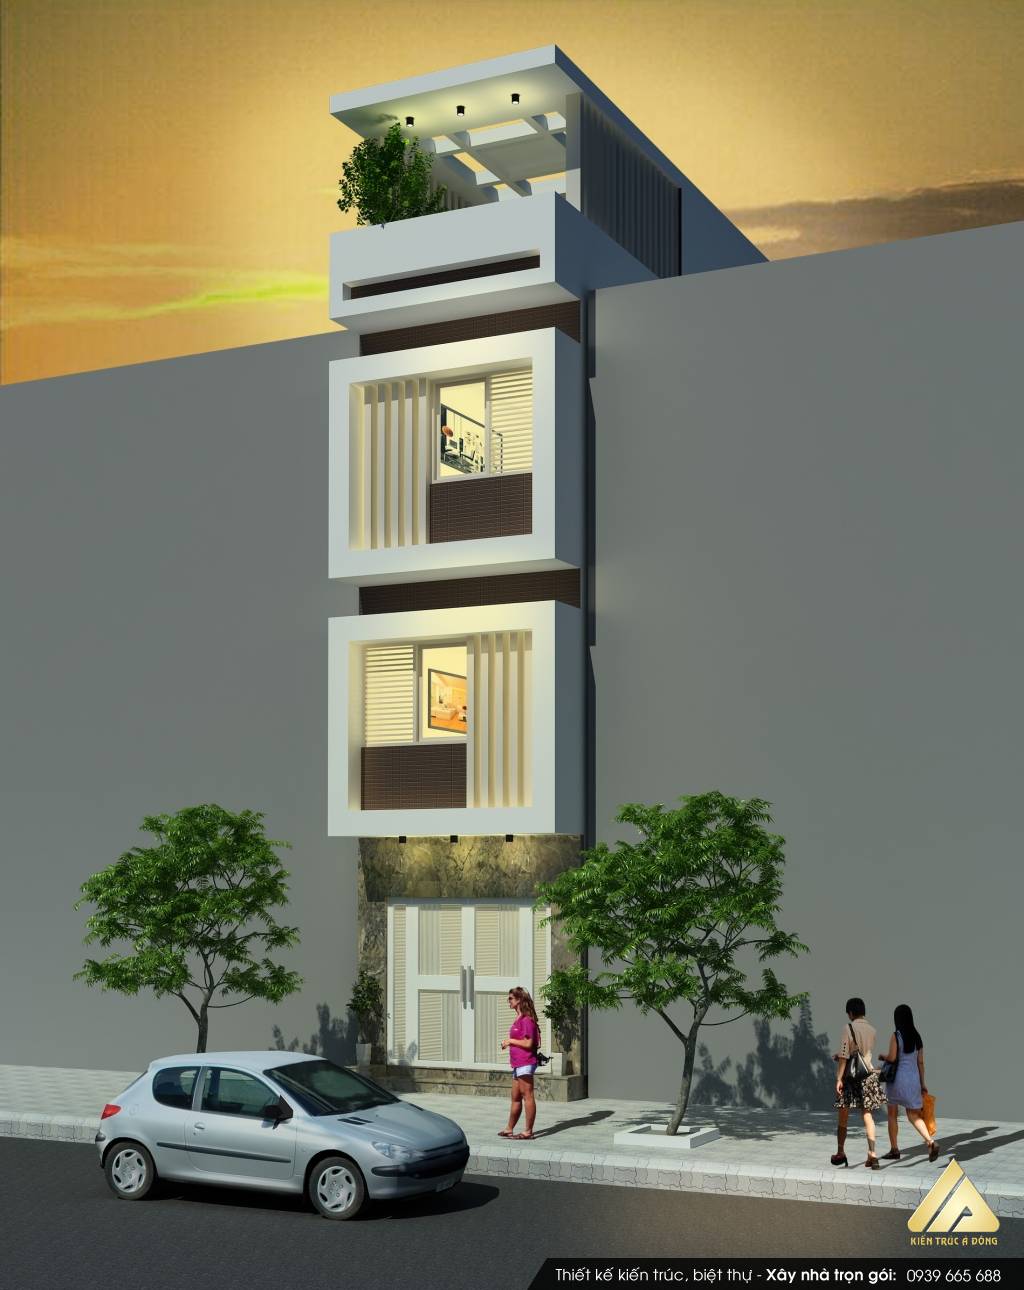 Chọn lọc các mẫu nhà phố đẹp nhất việt nam > Mẫu nhà phố 4 tầng hiện đại, sang trọng tại TP. Hạ Long